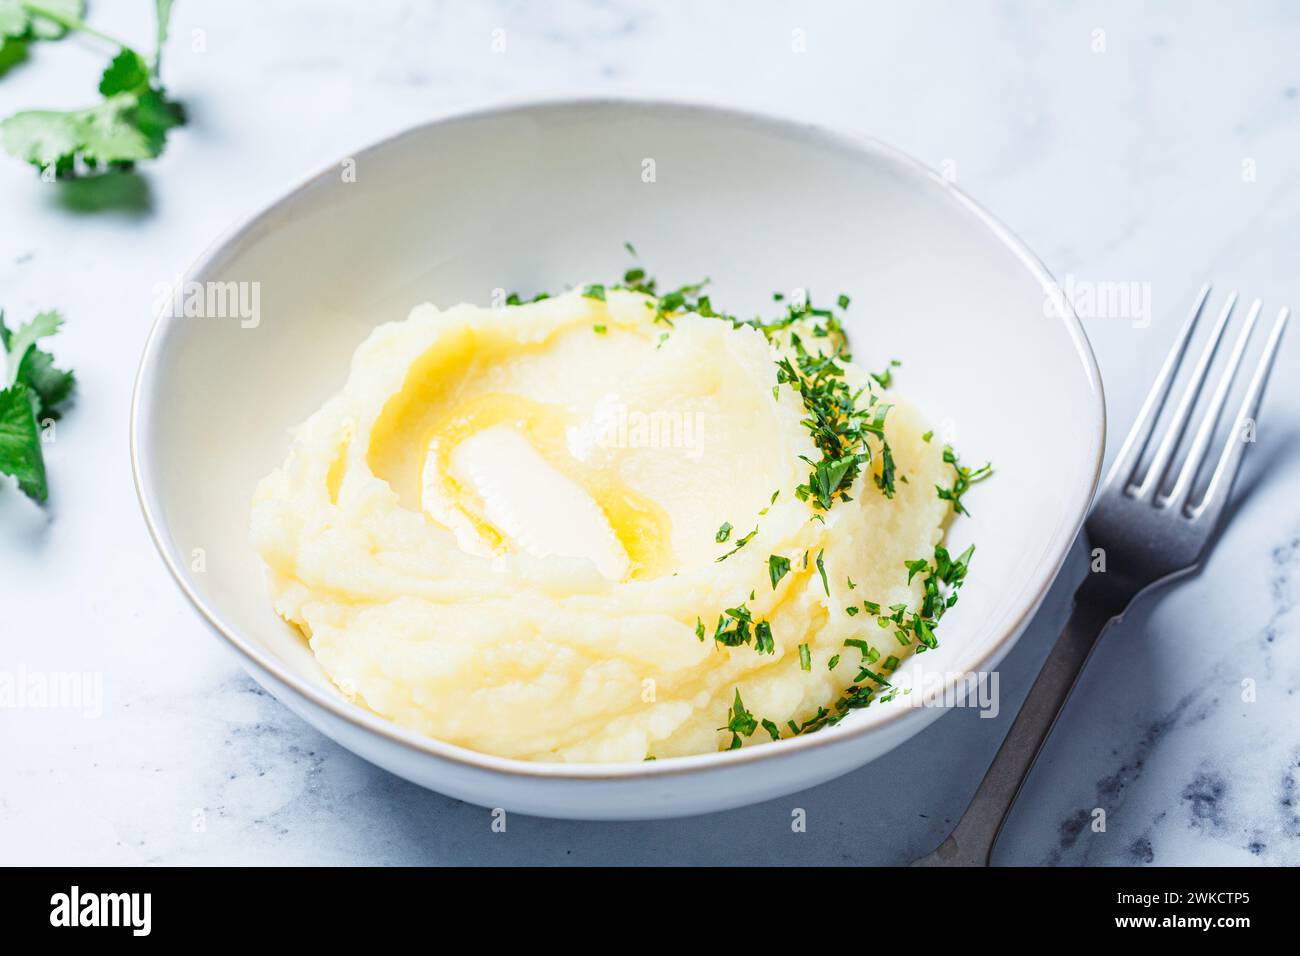 Purée de pommes de terre classique avec beurre et herbes, fond de marbre blanc. Banque D'Images